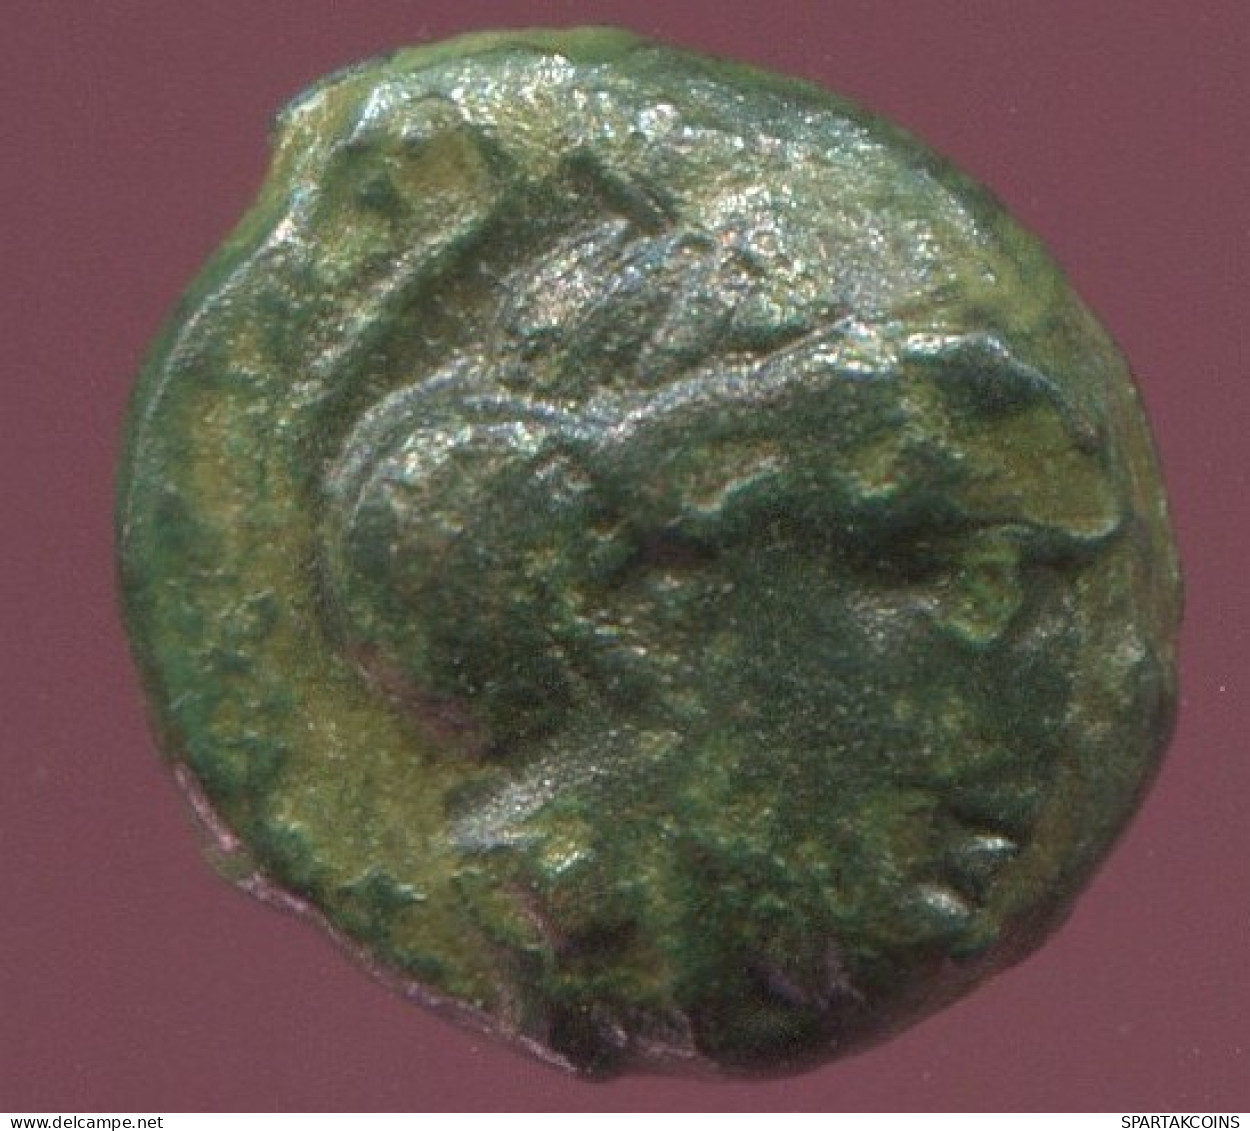 Antiguo Auténtico Original GRIEGO Moneda 1.2g/10mm #ANT1510.9.E.A - Griechische Münzen